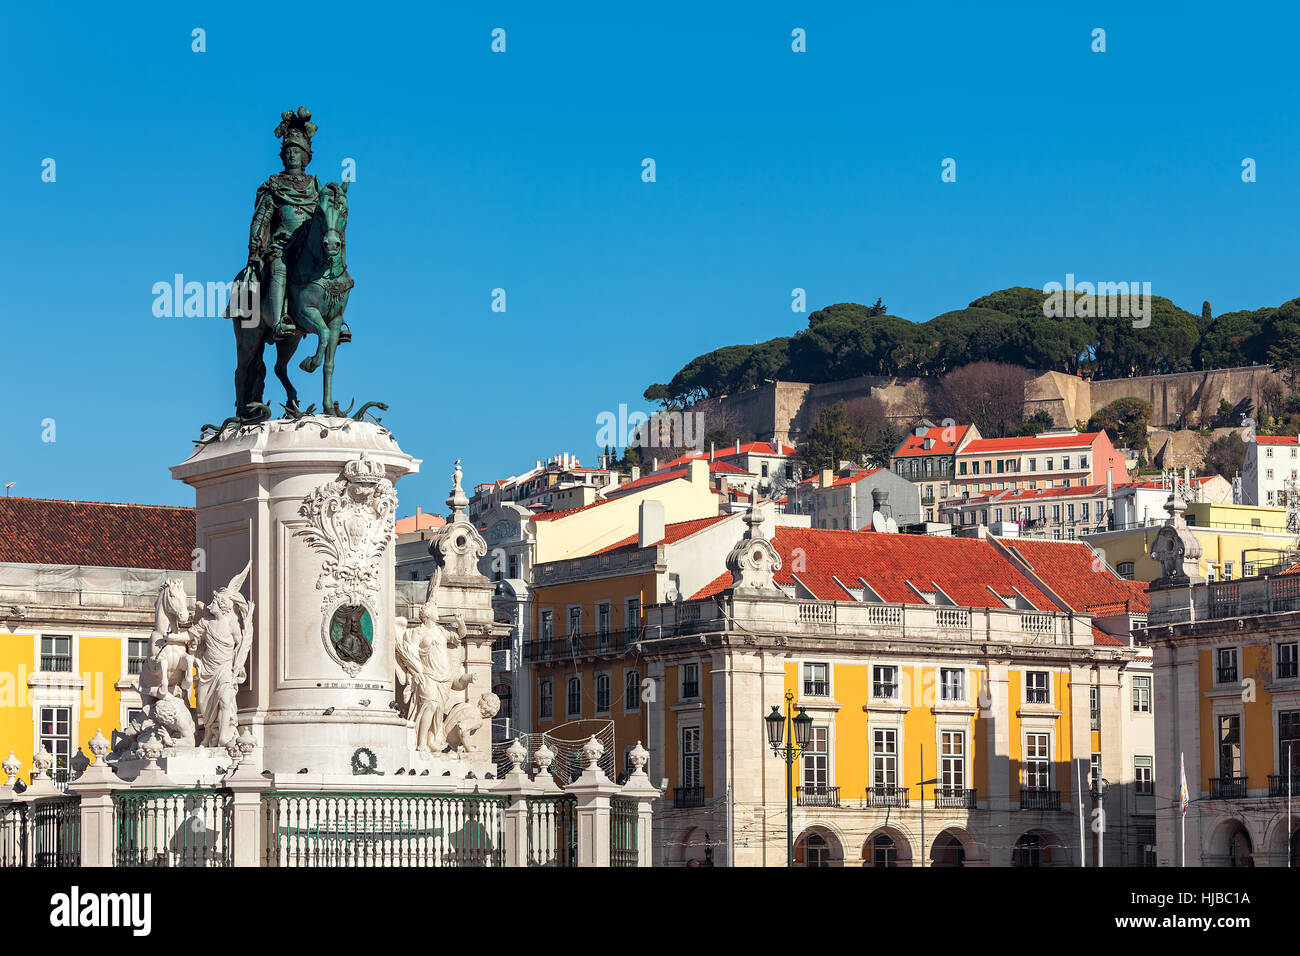 Statue en bronze du Roi Jose sur le cheval aussi vieux maisons colorées sur l'arrière-plan sous ciel bleu à la place du Commerce à Lisbonne, Portugal. Banque D'Images